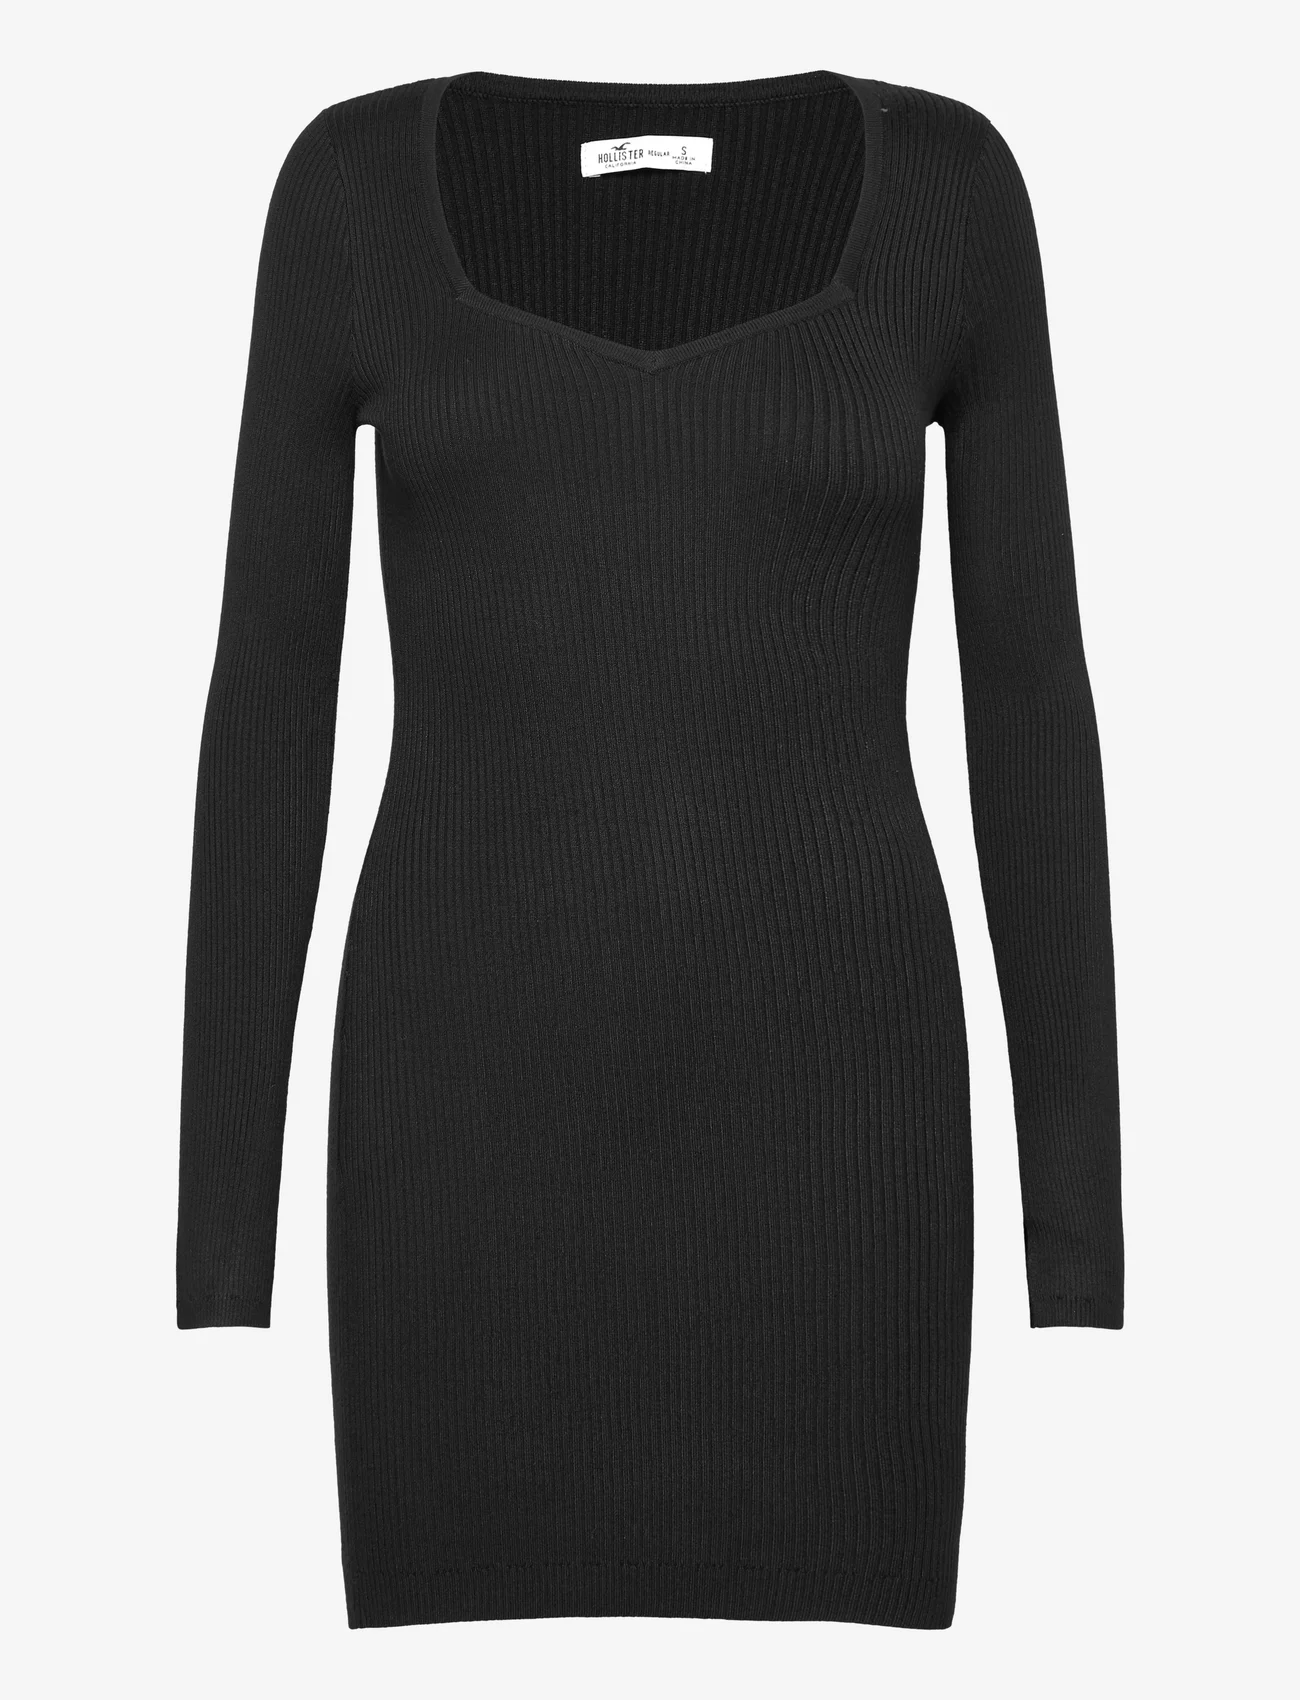 Hollister - HCo. GIRLS DRESSES - tettsittende kjoler - black - 0